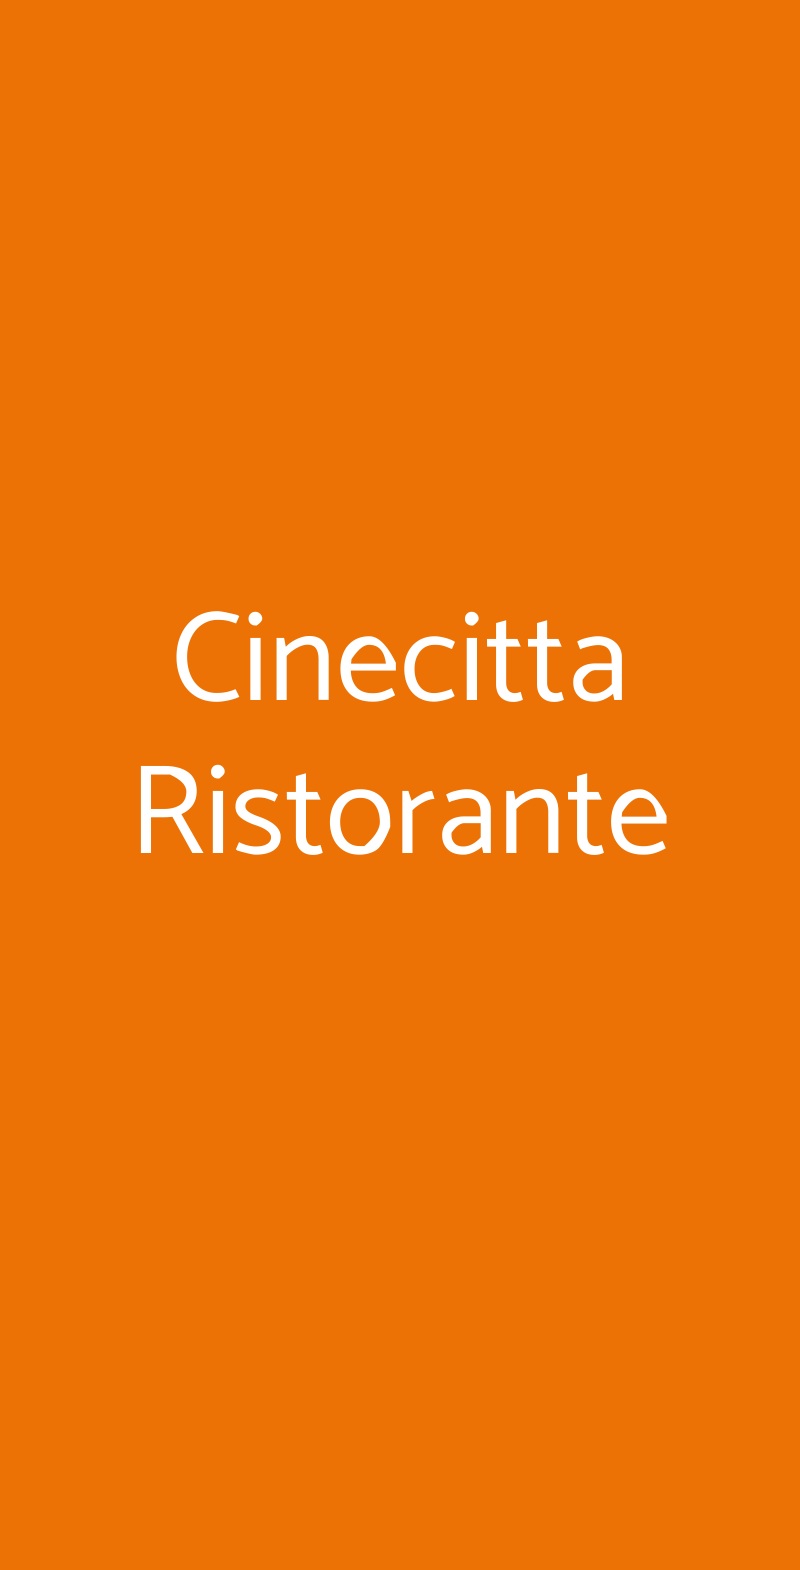 Cinecitta Ristorante Milano menù 1 pagina